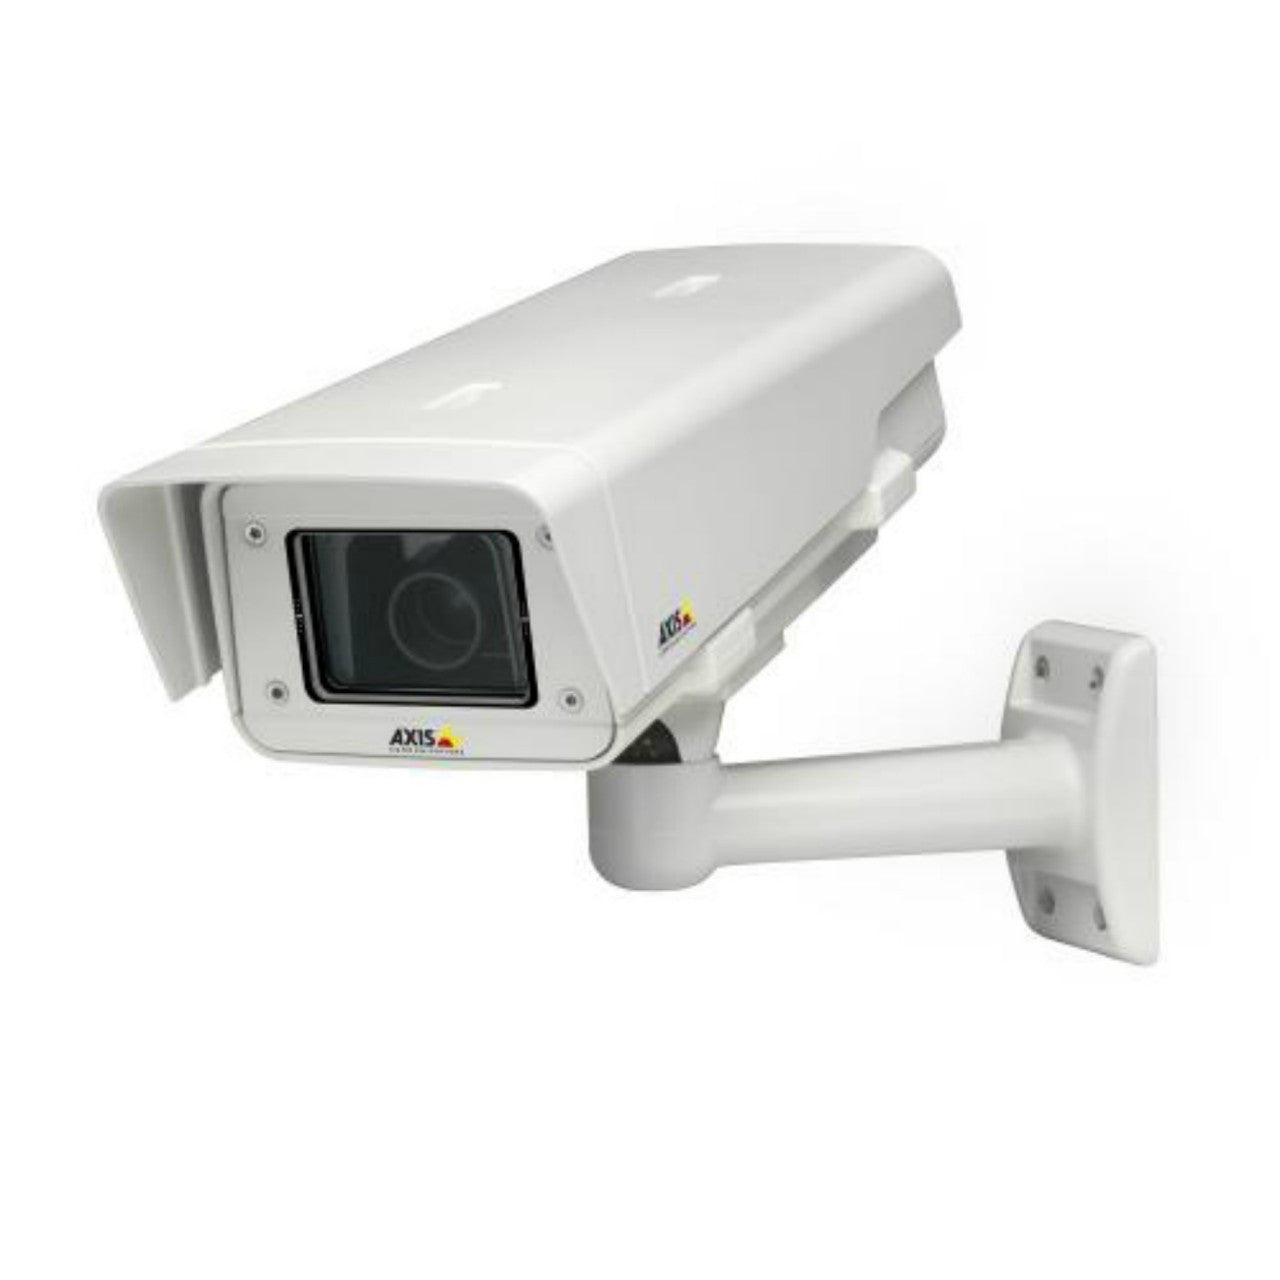 AXIS P1346-E (0351-001) HDTV Outdoor IP Network Camera